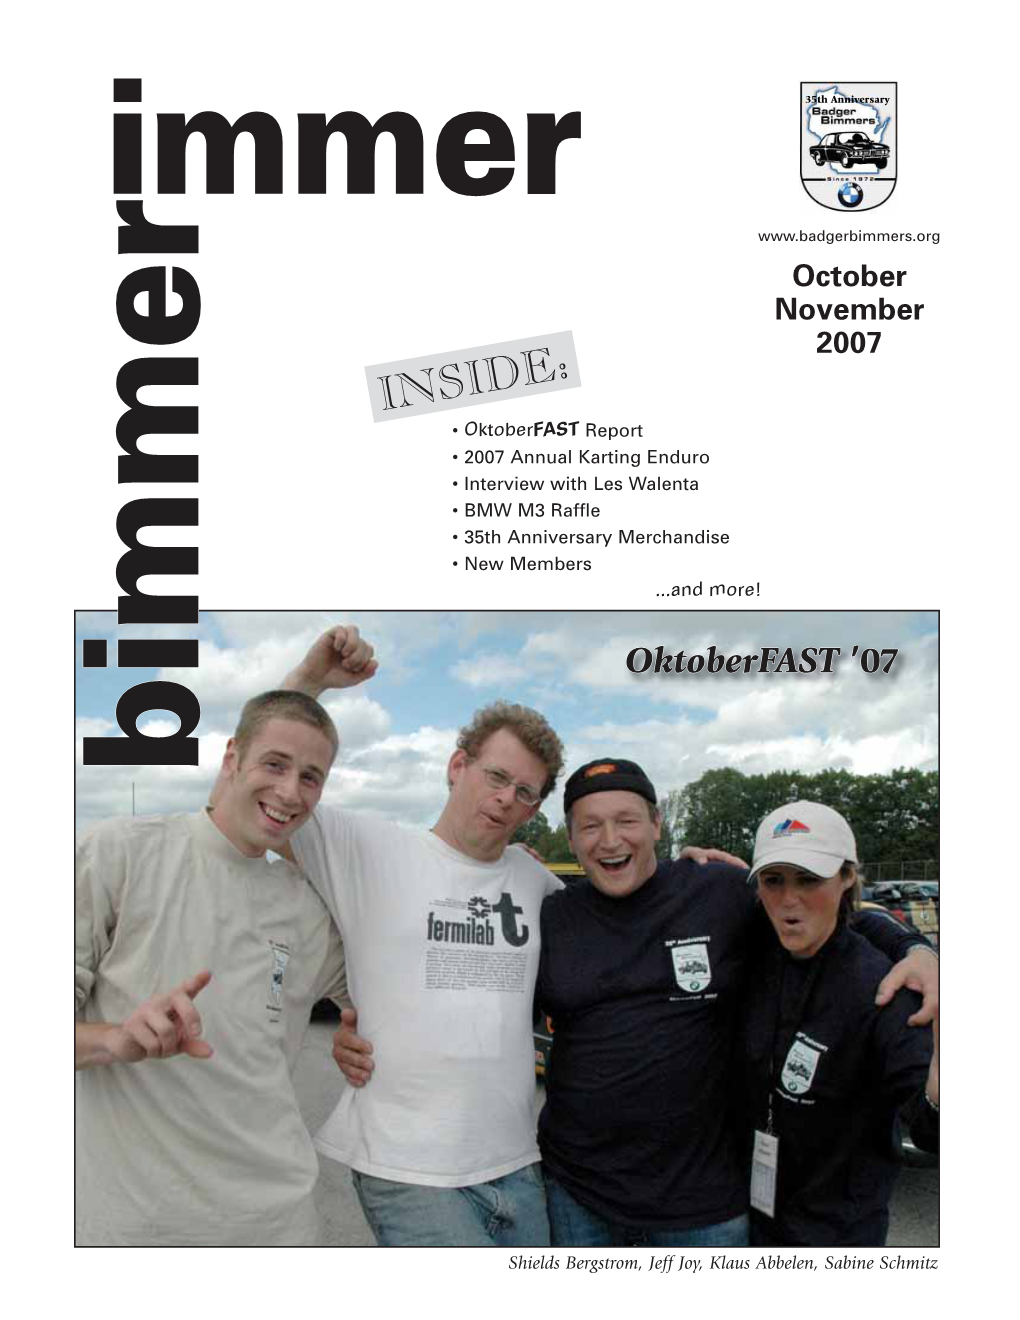 October 2007 Bimmer Immer